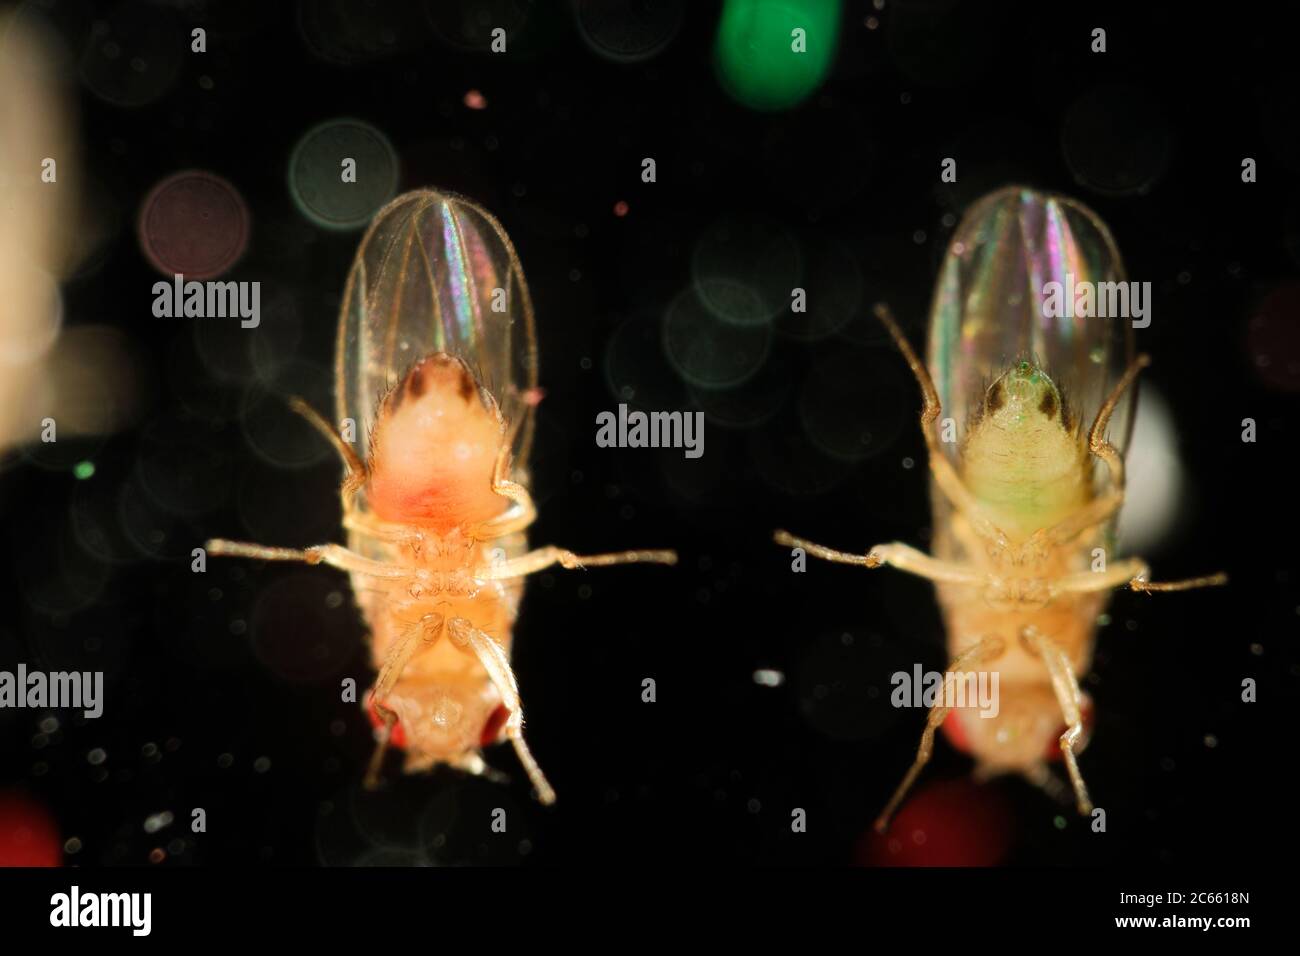 Mouche de type sauvage (Drosophila melanogaster) dans une culture de laboratoire. Les animaux étaient nourris avec de la nourriture verte et rouge Banque D'Images